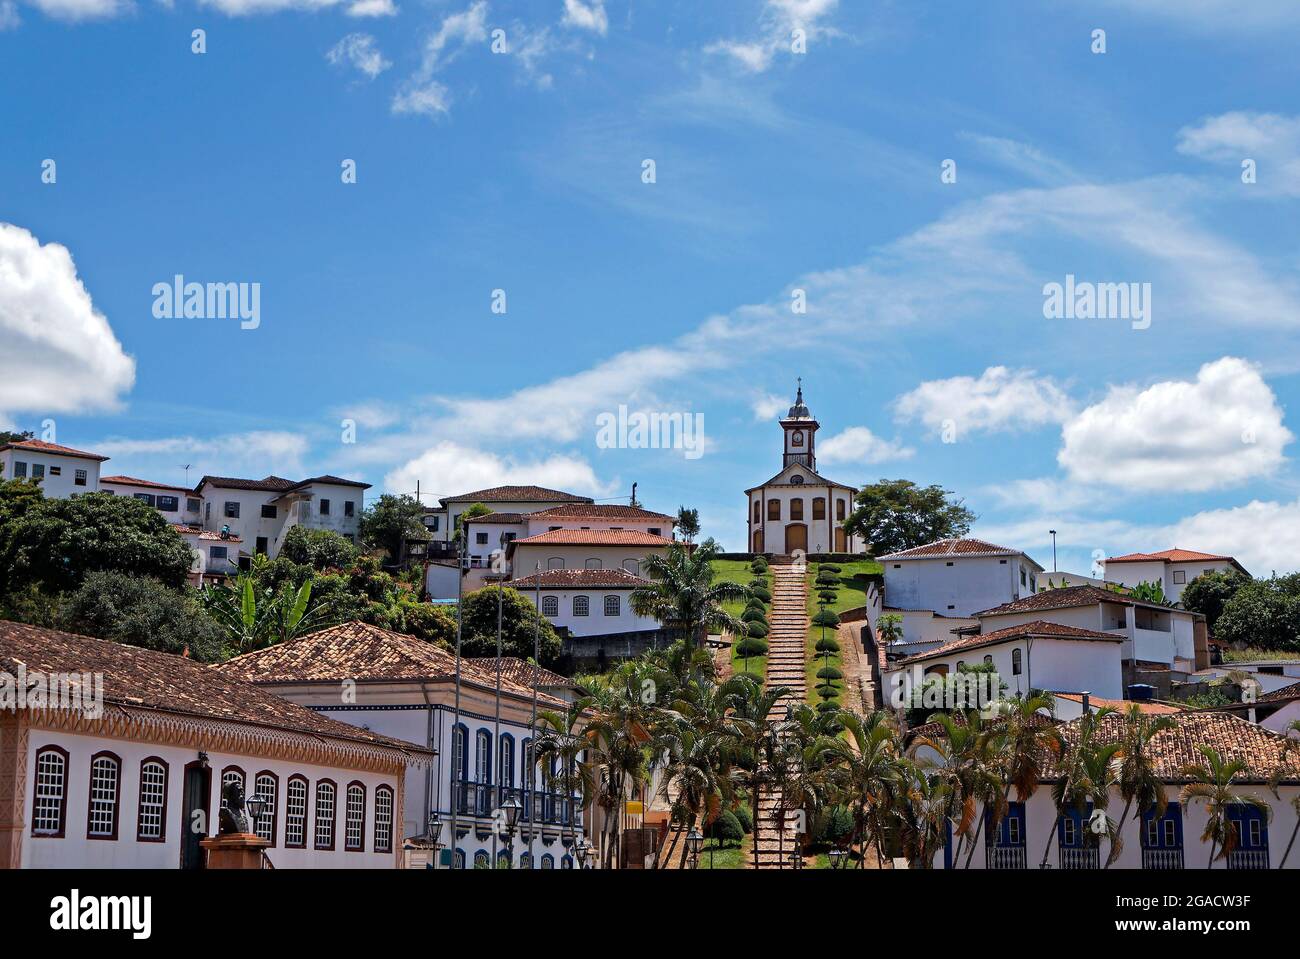 Vue panoramique de Serro, ville historique de Minas Gerais, Brésil Banque D'Images